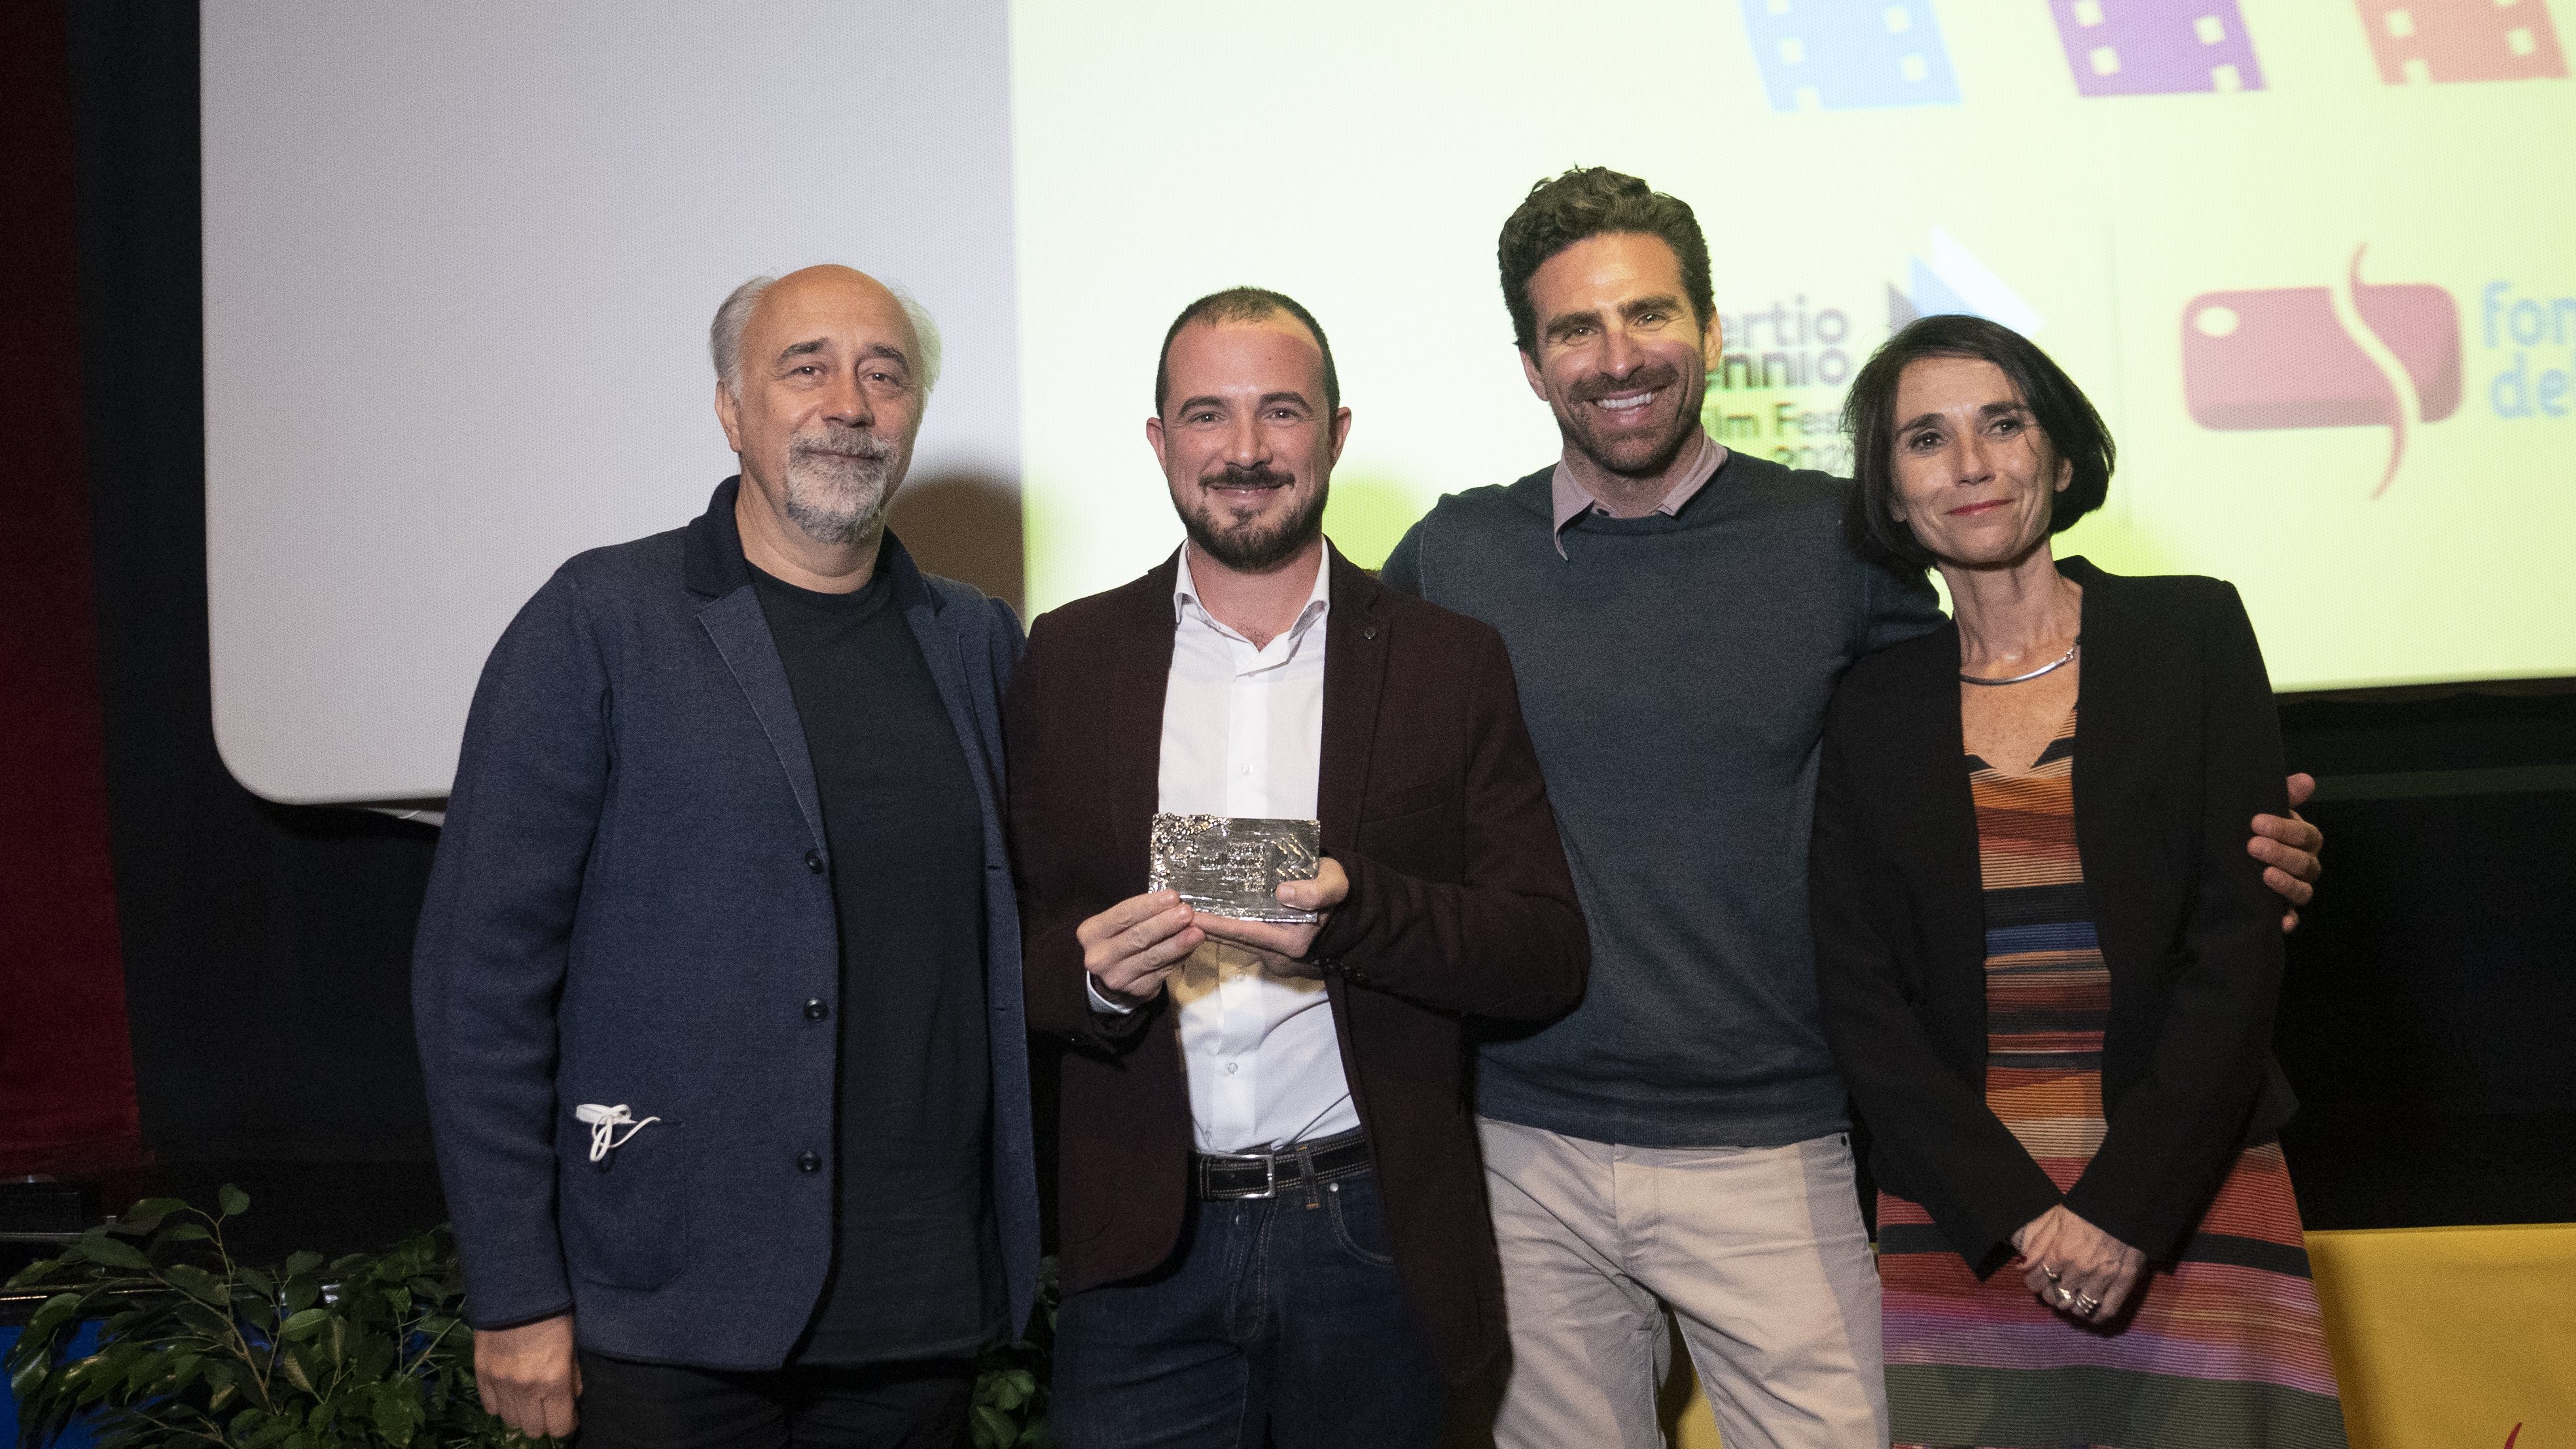 Francesco-Tocci-ritira-il-premio-miglior-film-per-_Al-cento-per-cento_-ph.-Karen-Di-Paola-edited.jpg